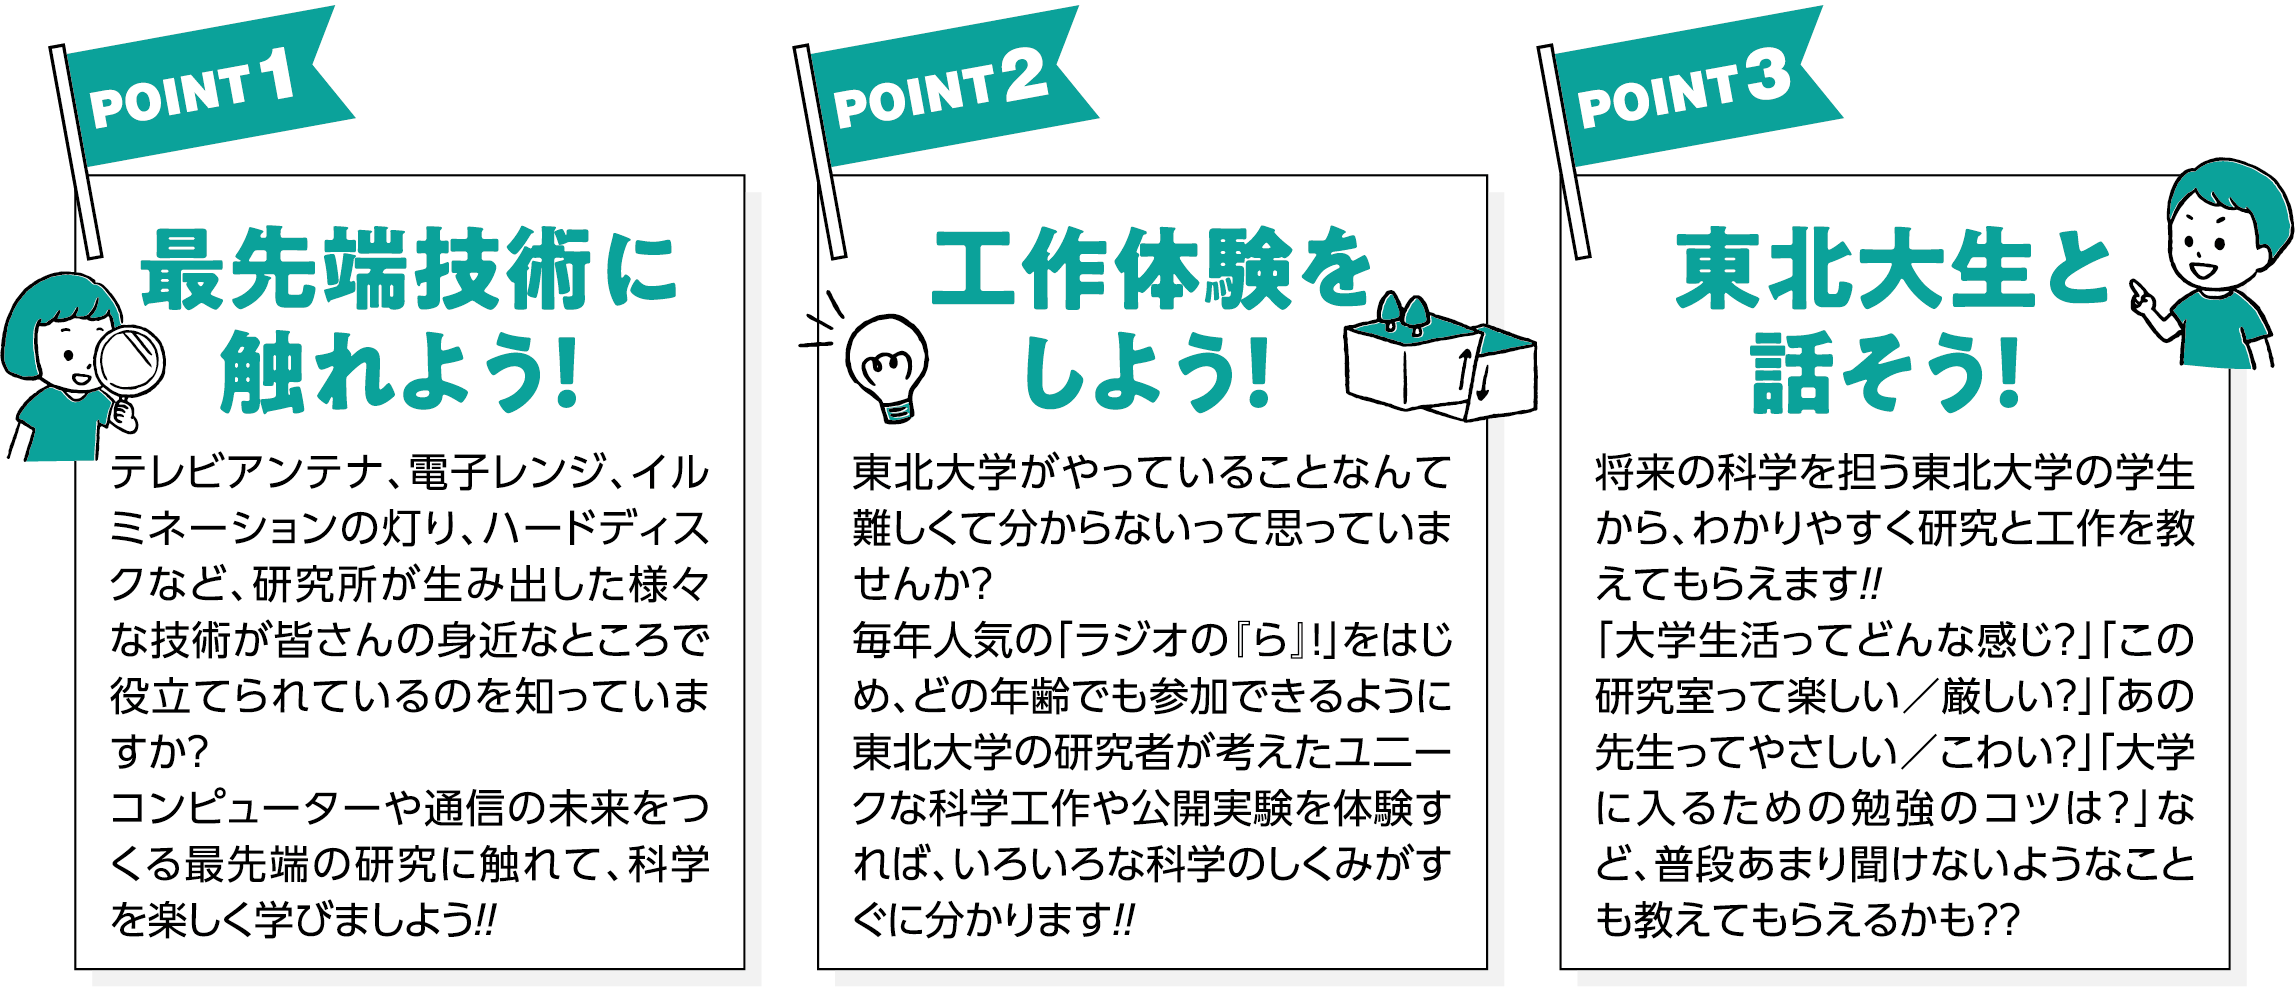 POINT1-2-3